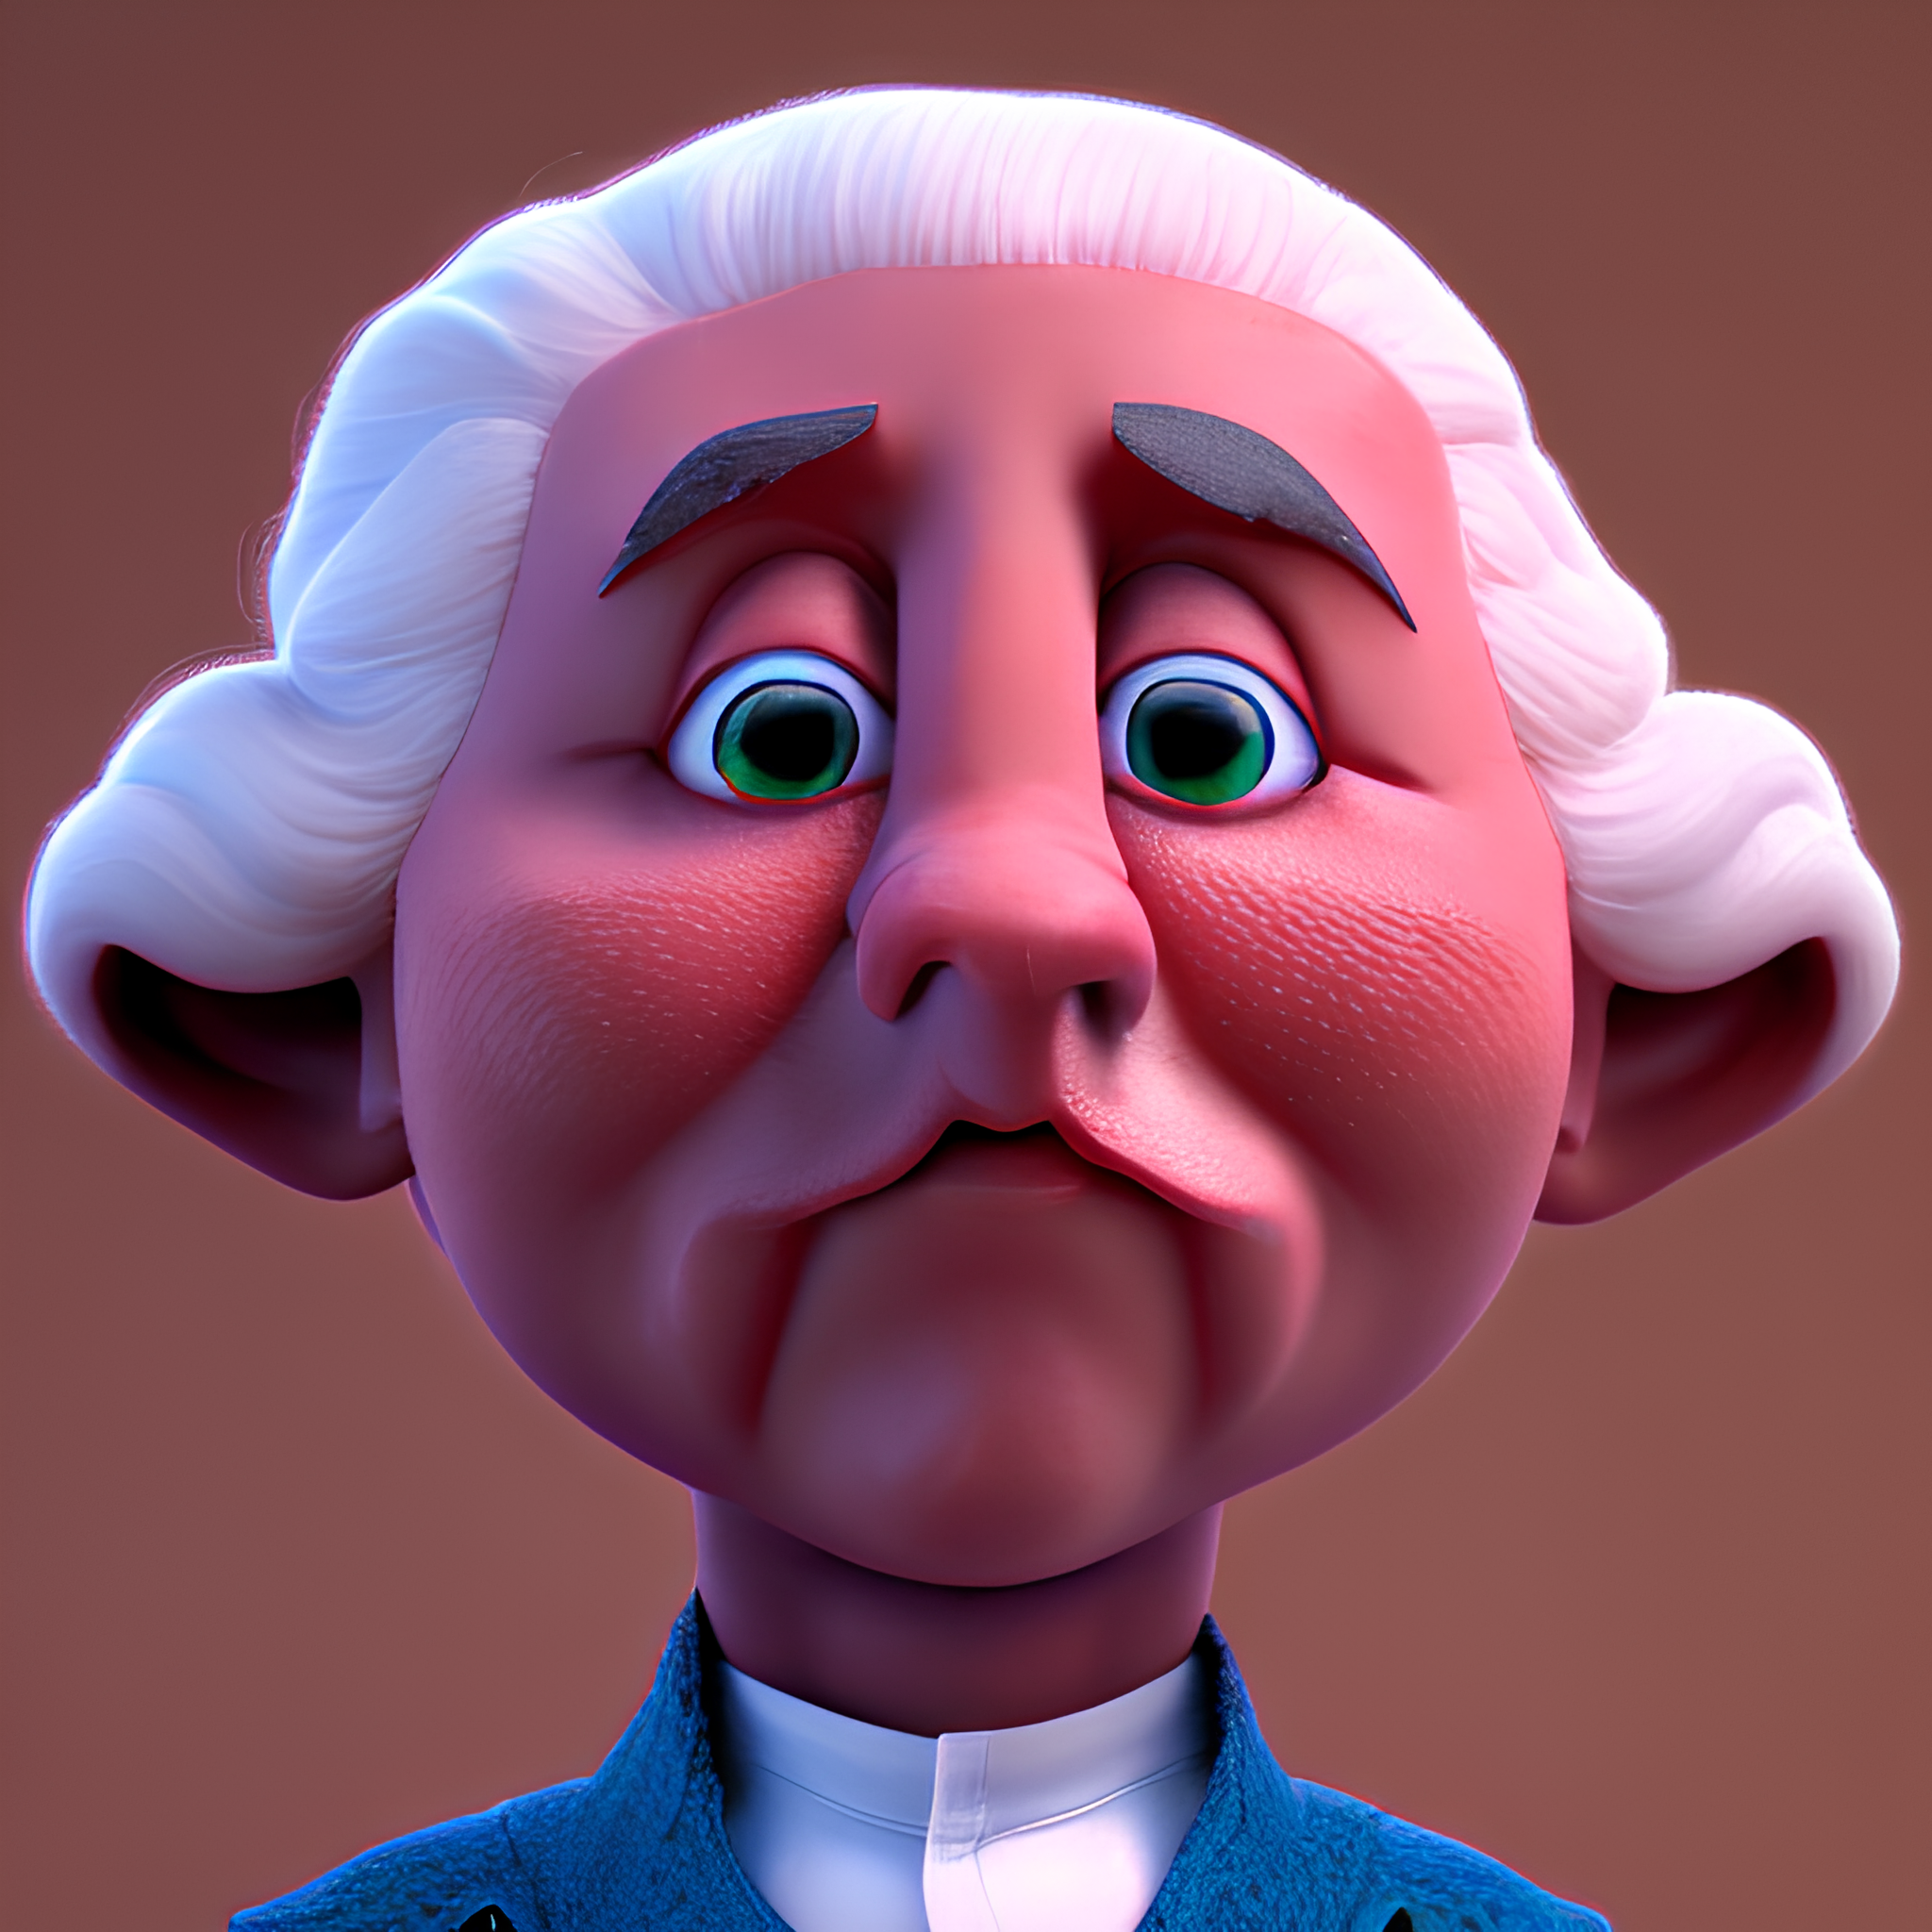 U.S. presidents as Pixar characters